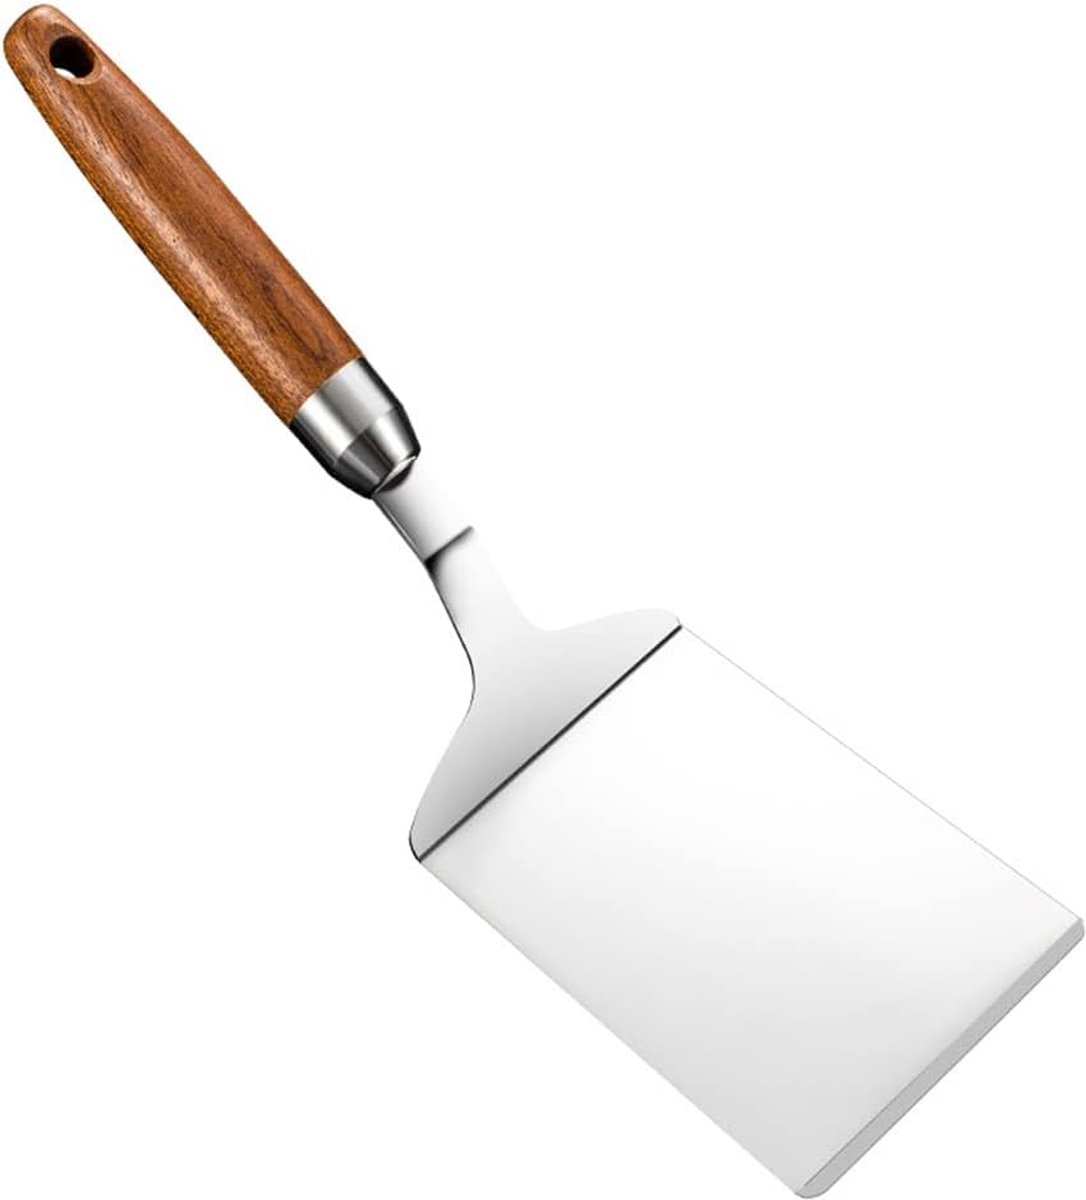 Ensemble de spatules pour gril plat en métal lourd, spatule pour